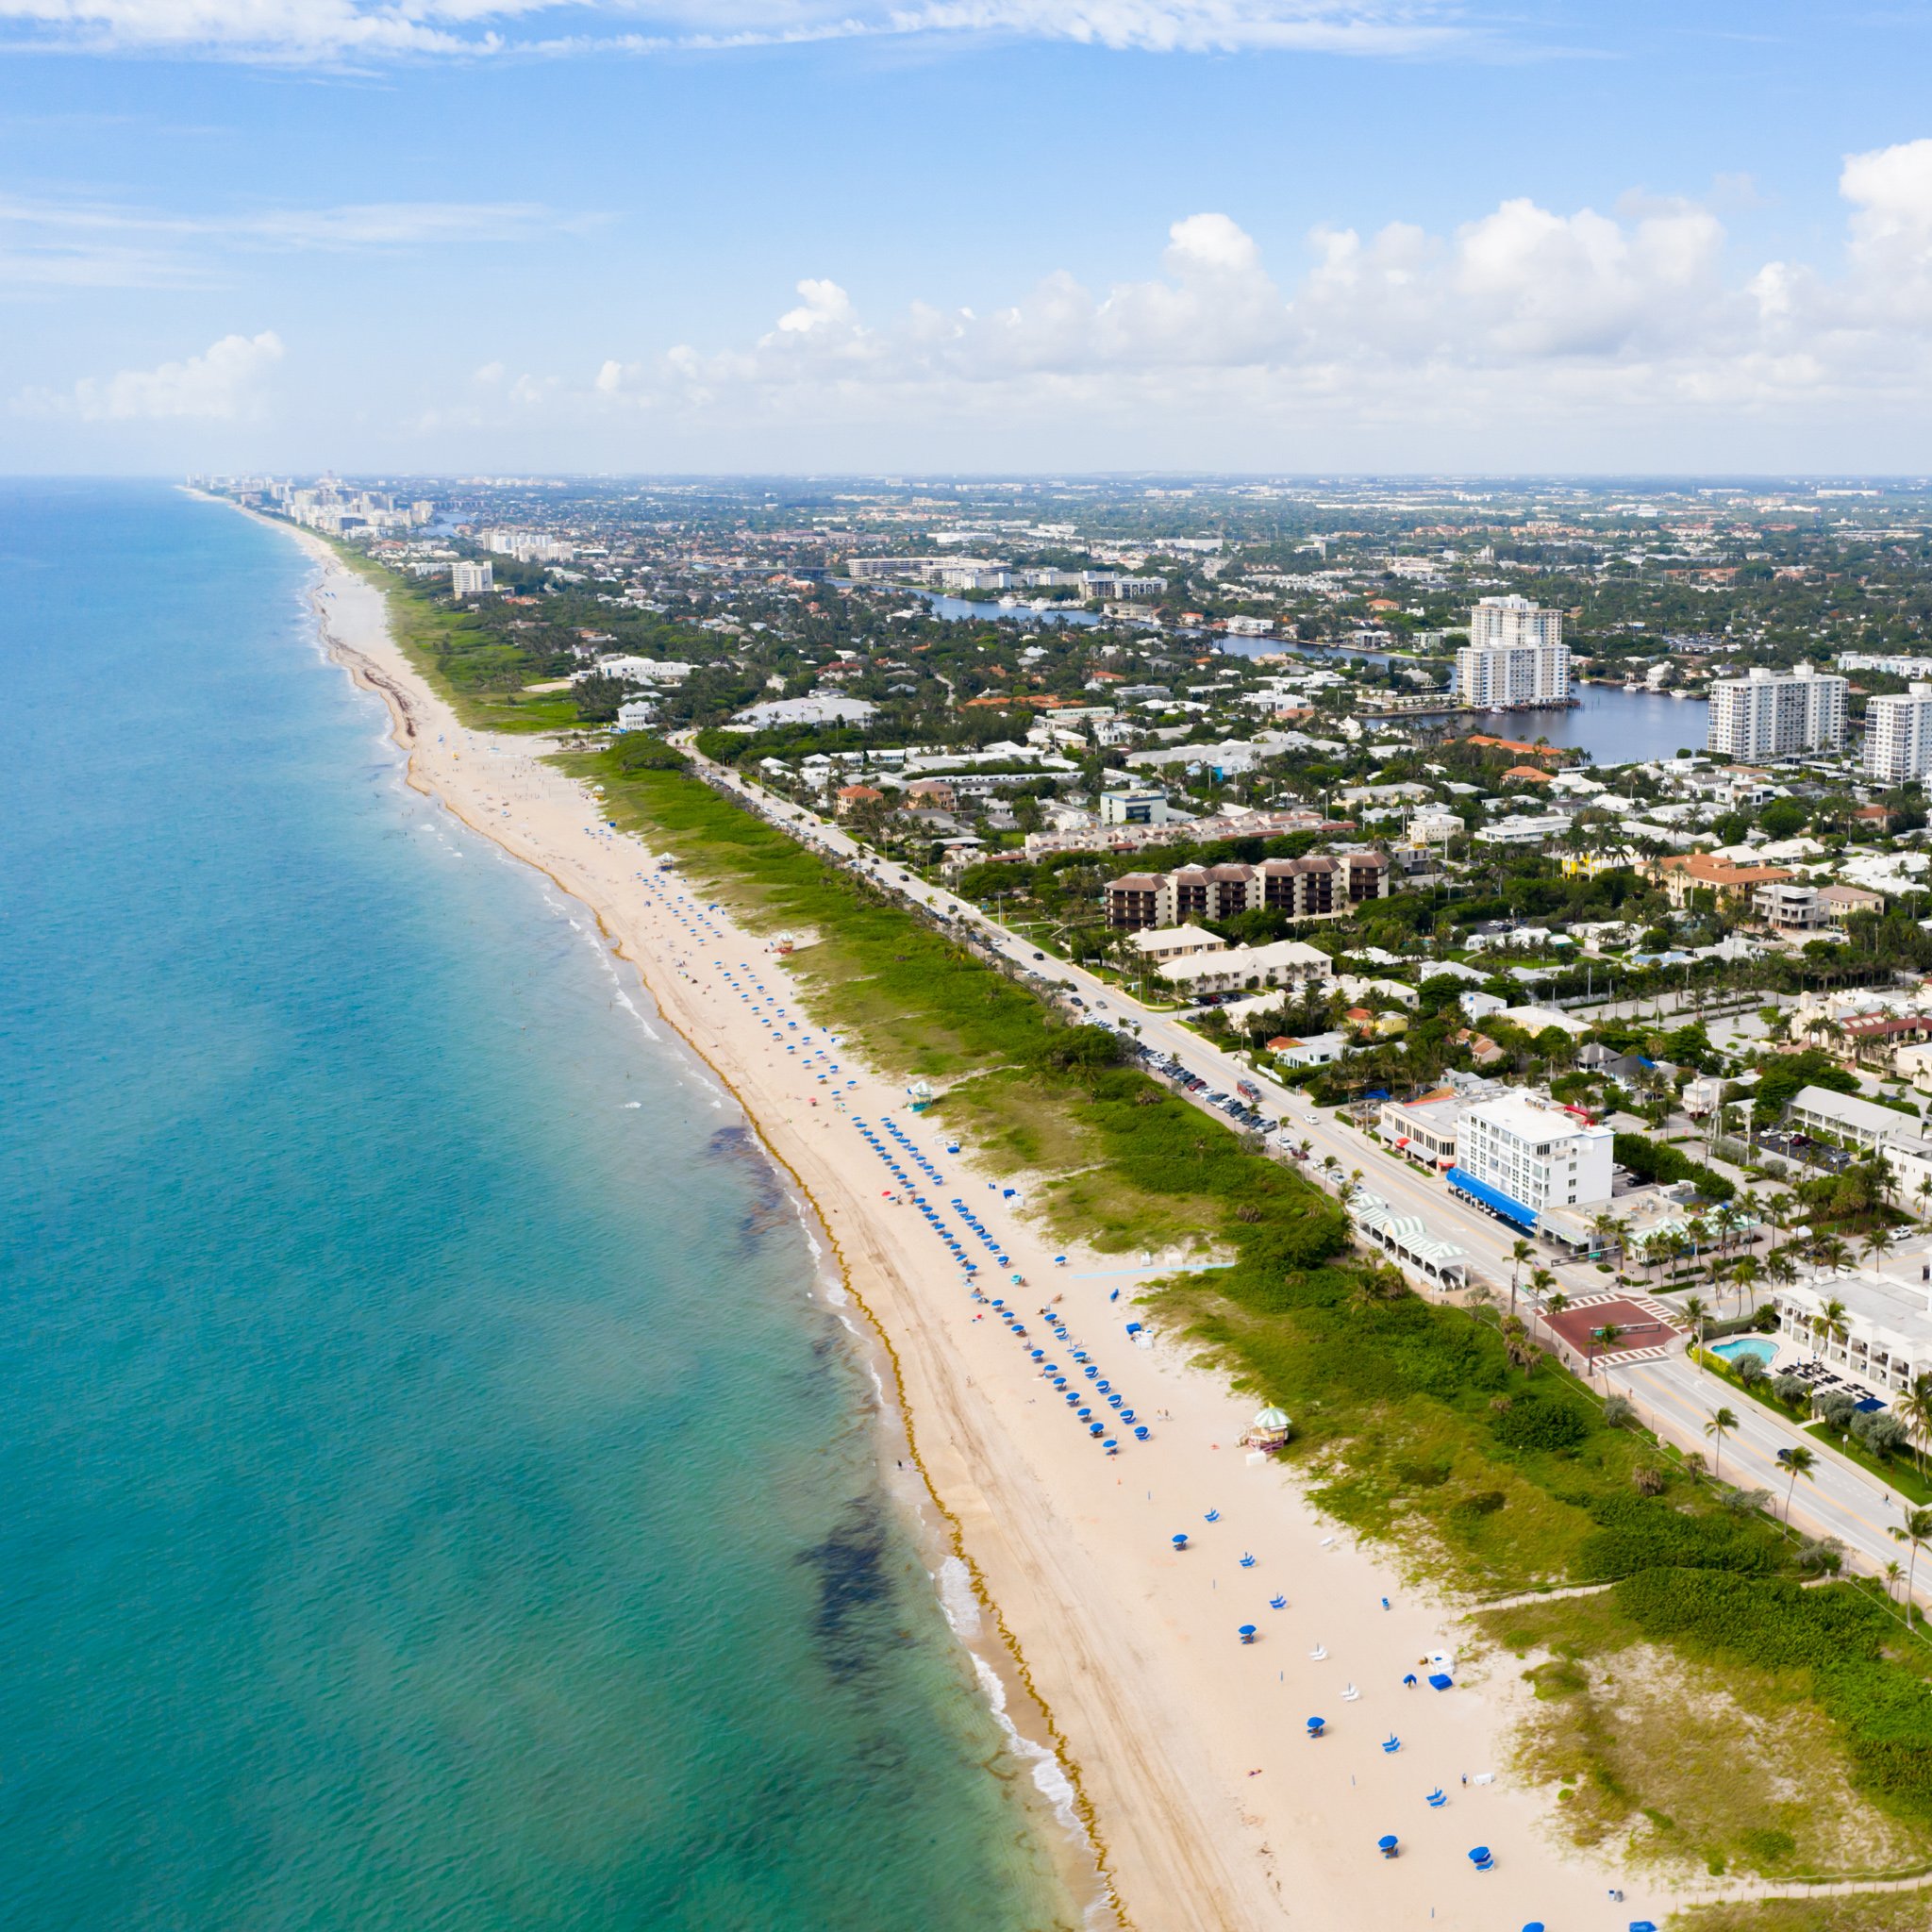 17 increíbles ciudades de playa que encabezan la lista de viajes de nuestros lectores (2021) - 31